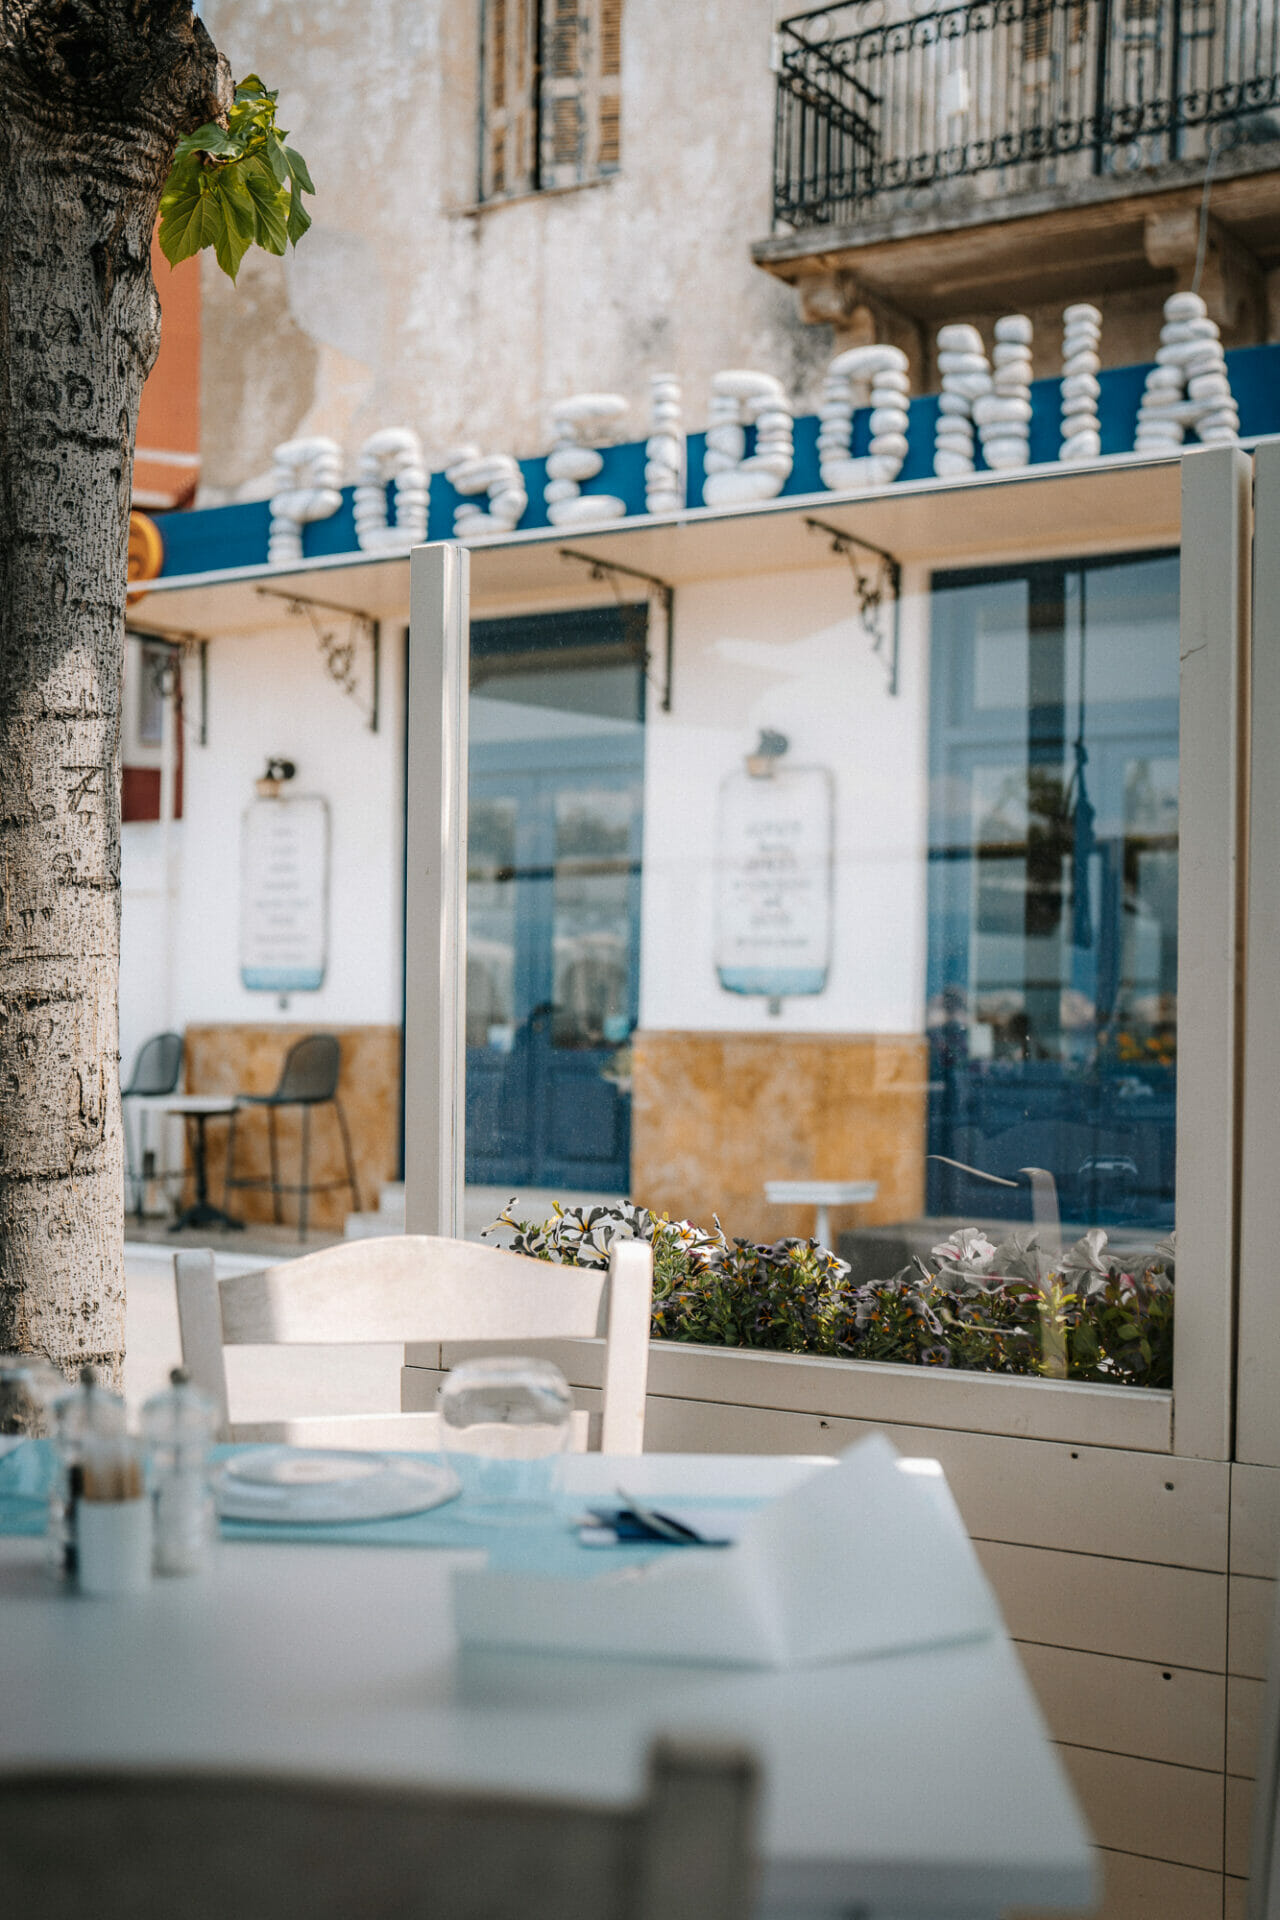 poseidonia restaurant, things to do in costa navarino